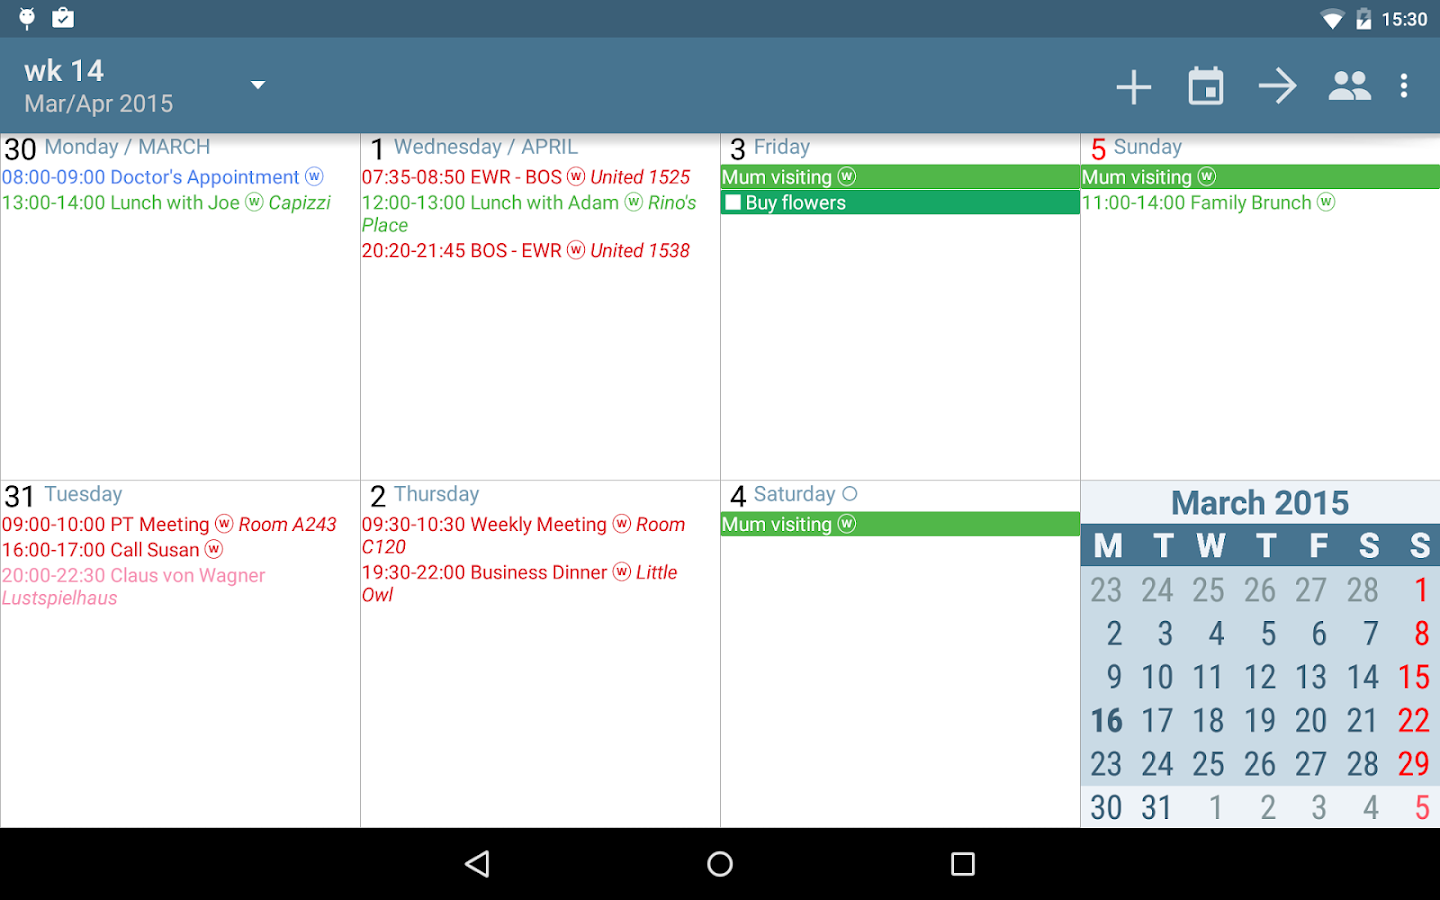    aCalendar+ Calendar & Tasks- screenshot  